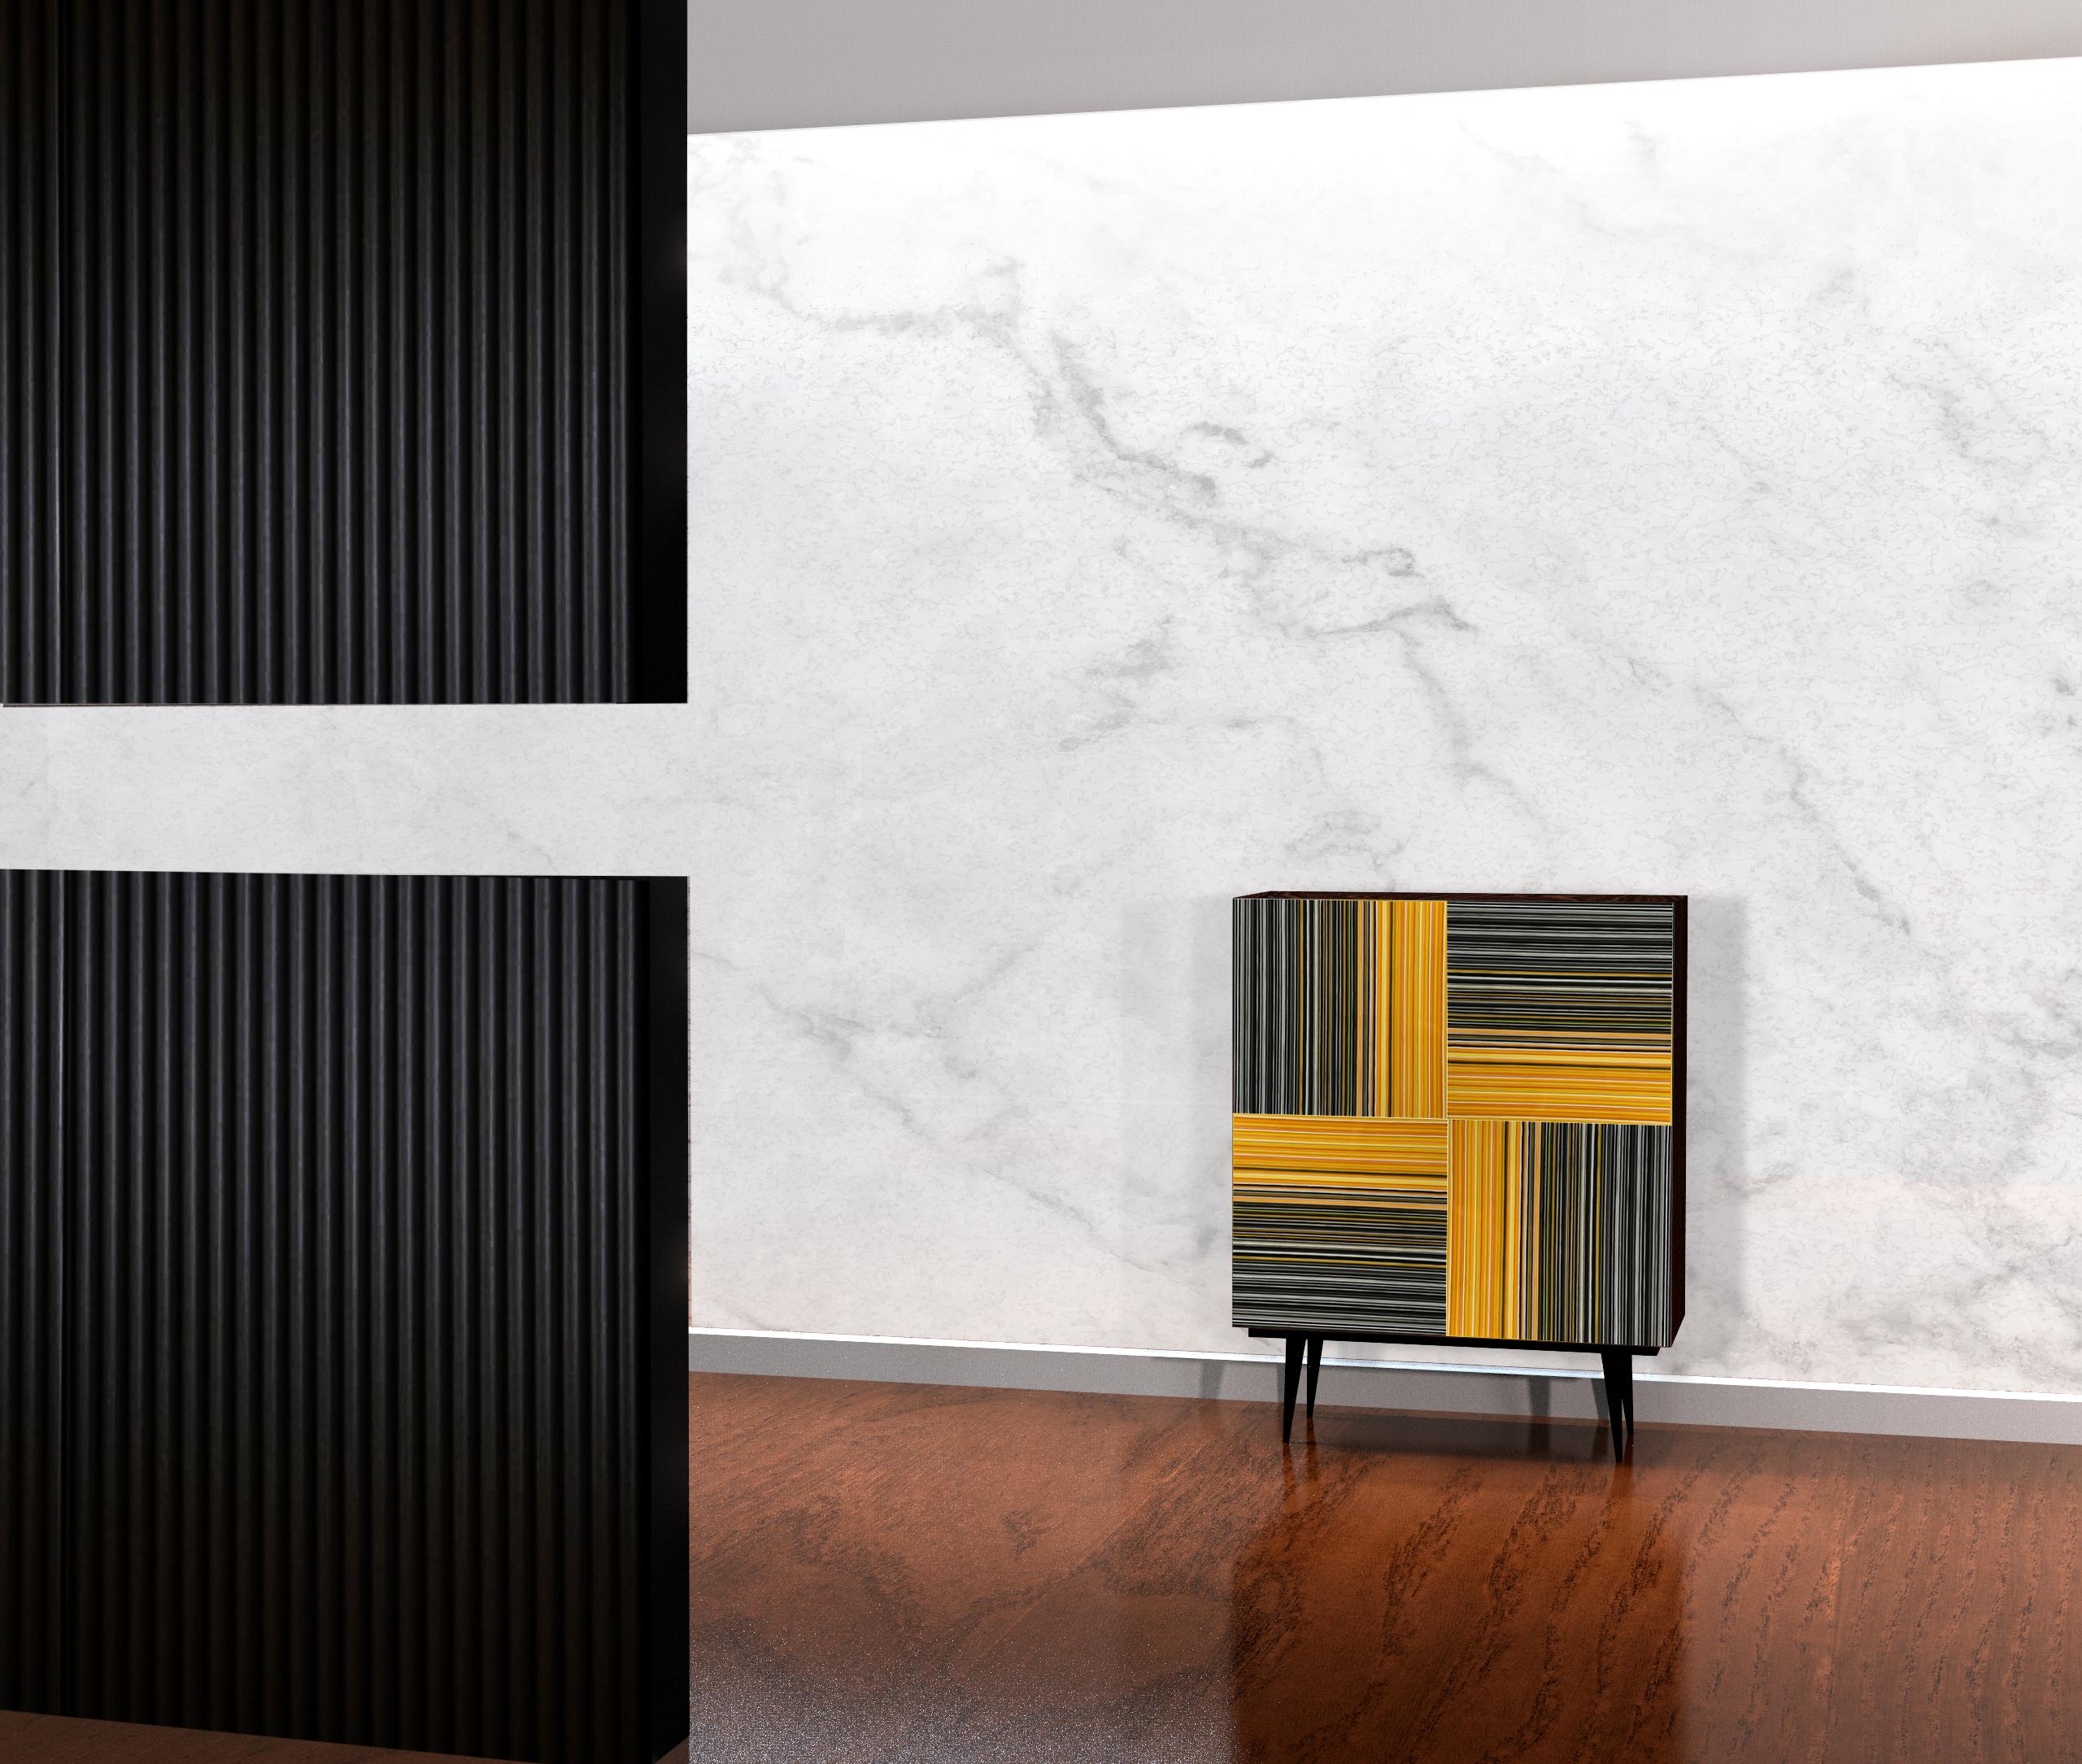 Bar entworfen von Orfeo Quagliata in Collaboration mit Taracea Furniture. 
Ein perfekt funktionales Möbelstück, dessen Türen zu 100% aus hochwertigem Schmelzglas bestehen, das mit der exklusiven Barcode-Technik hergestellt wird. Dieses geradlinige